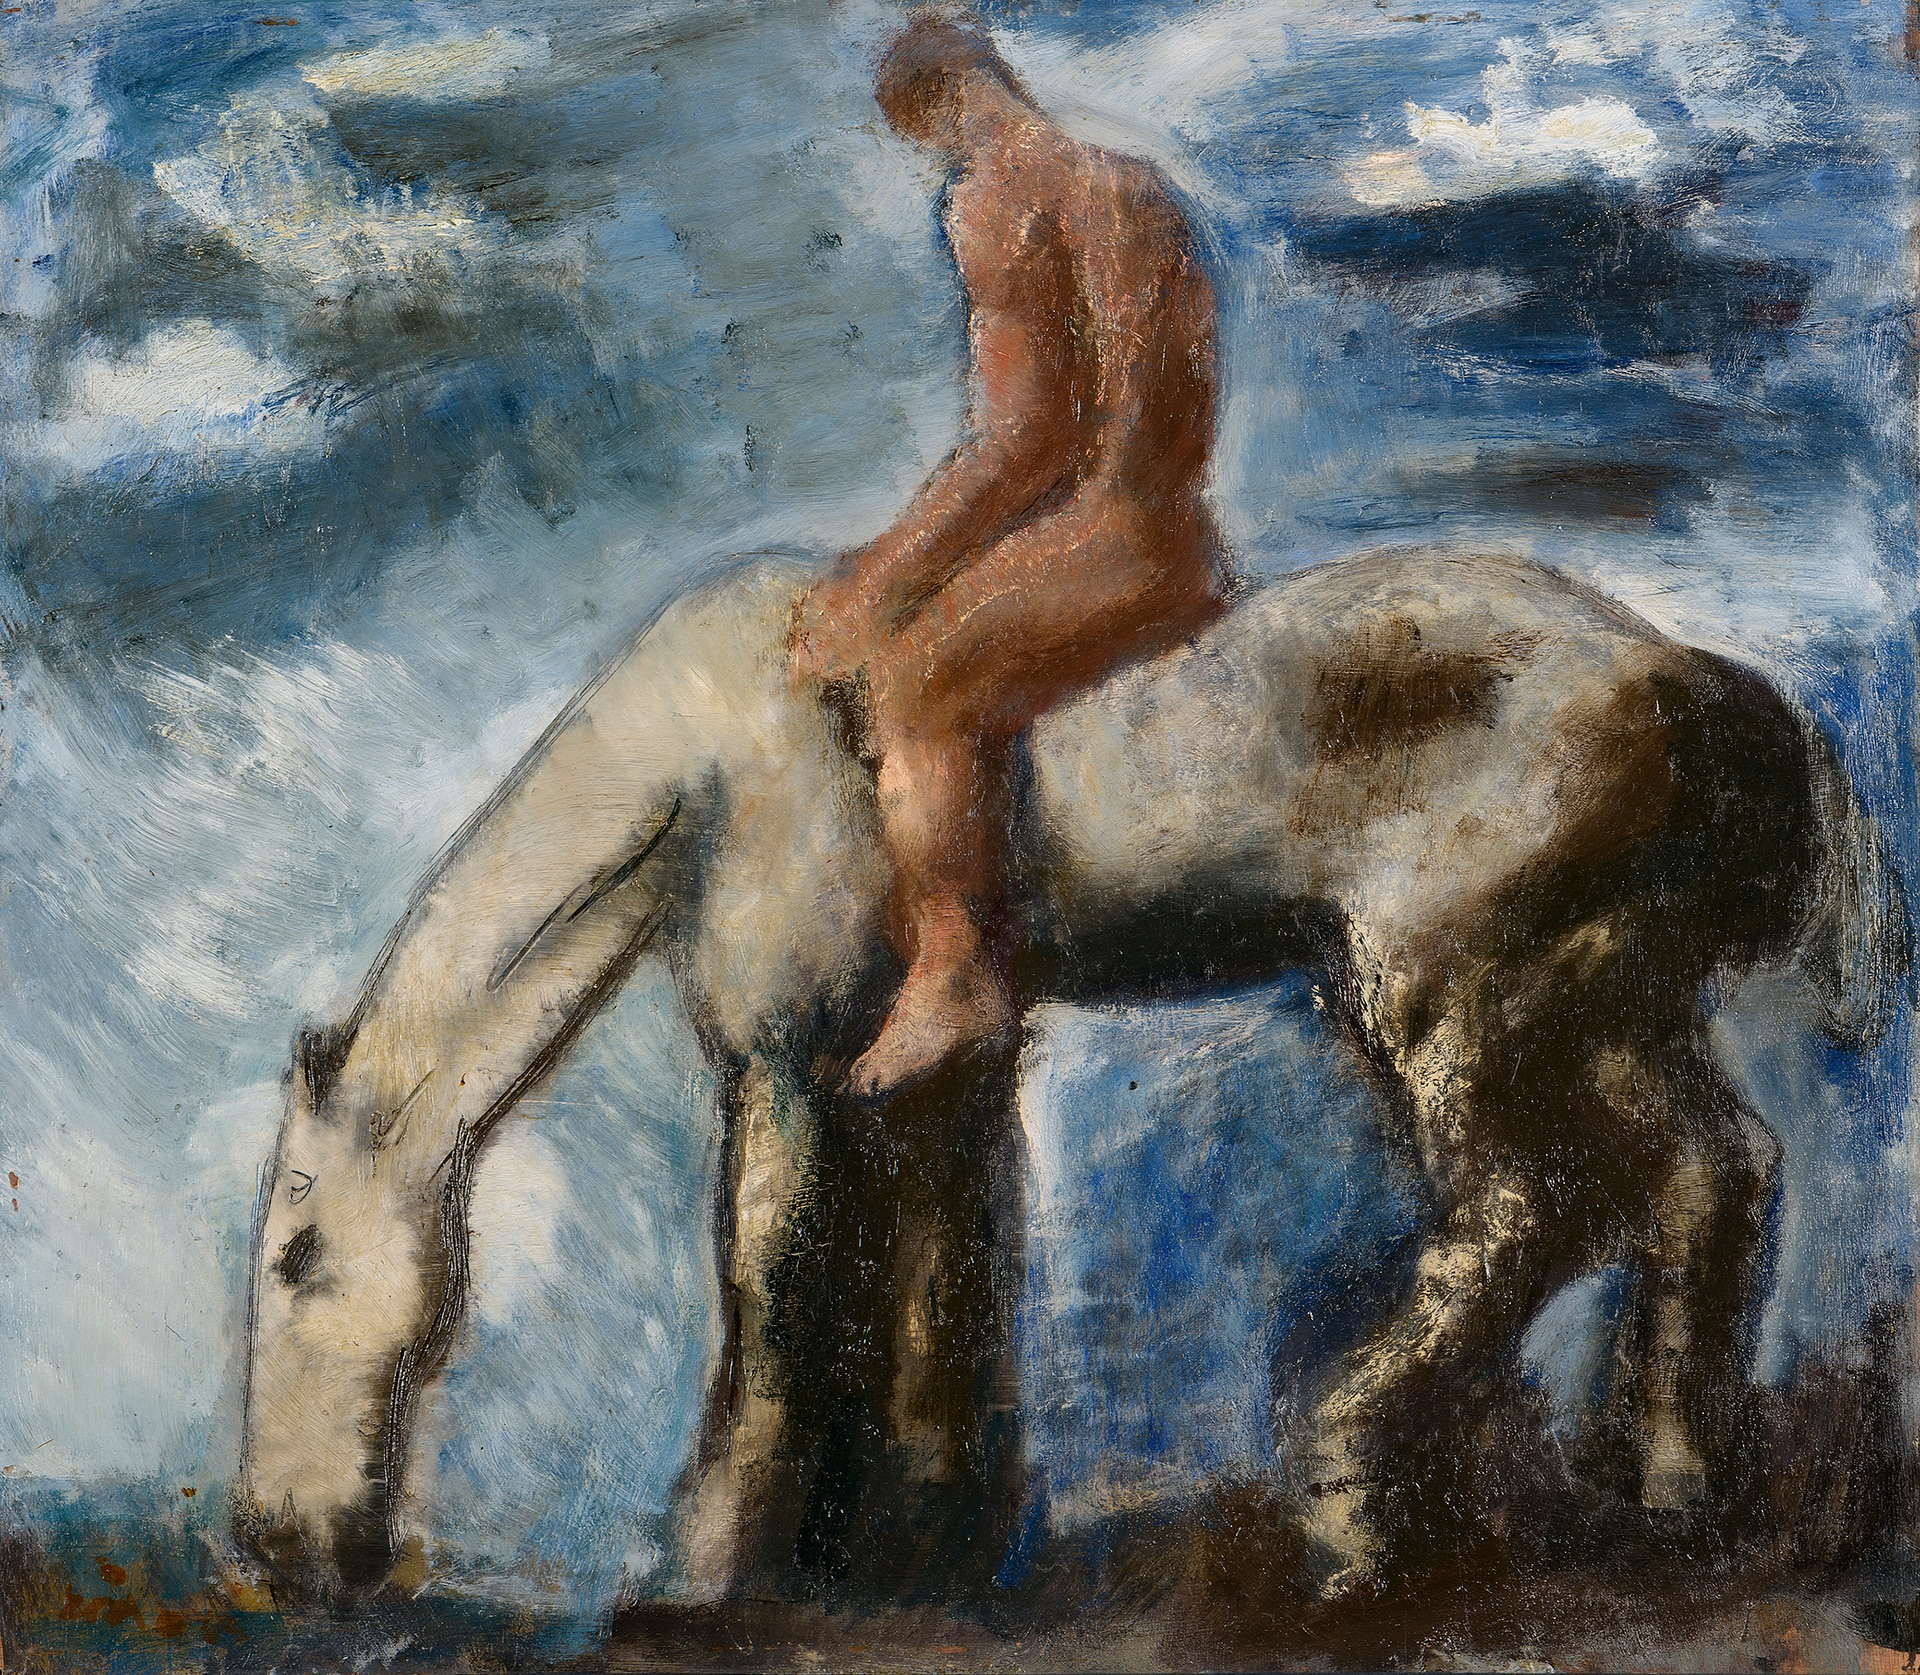 Mario Sironi: L'abbeverata, 1929 olio su compensato, 69,5 x 79,6 cm, Torino, collezione privata © Mario Sironi, by SIAE 2021 